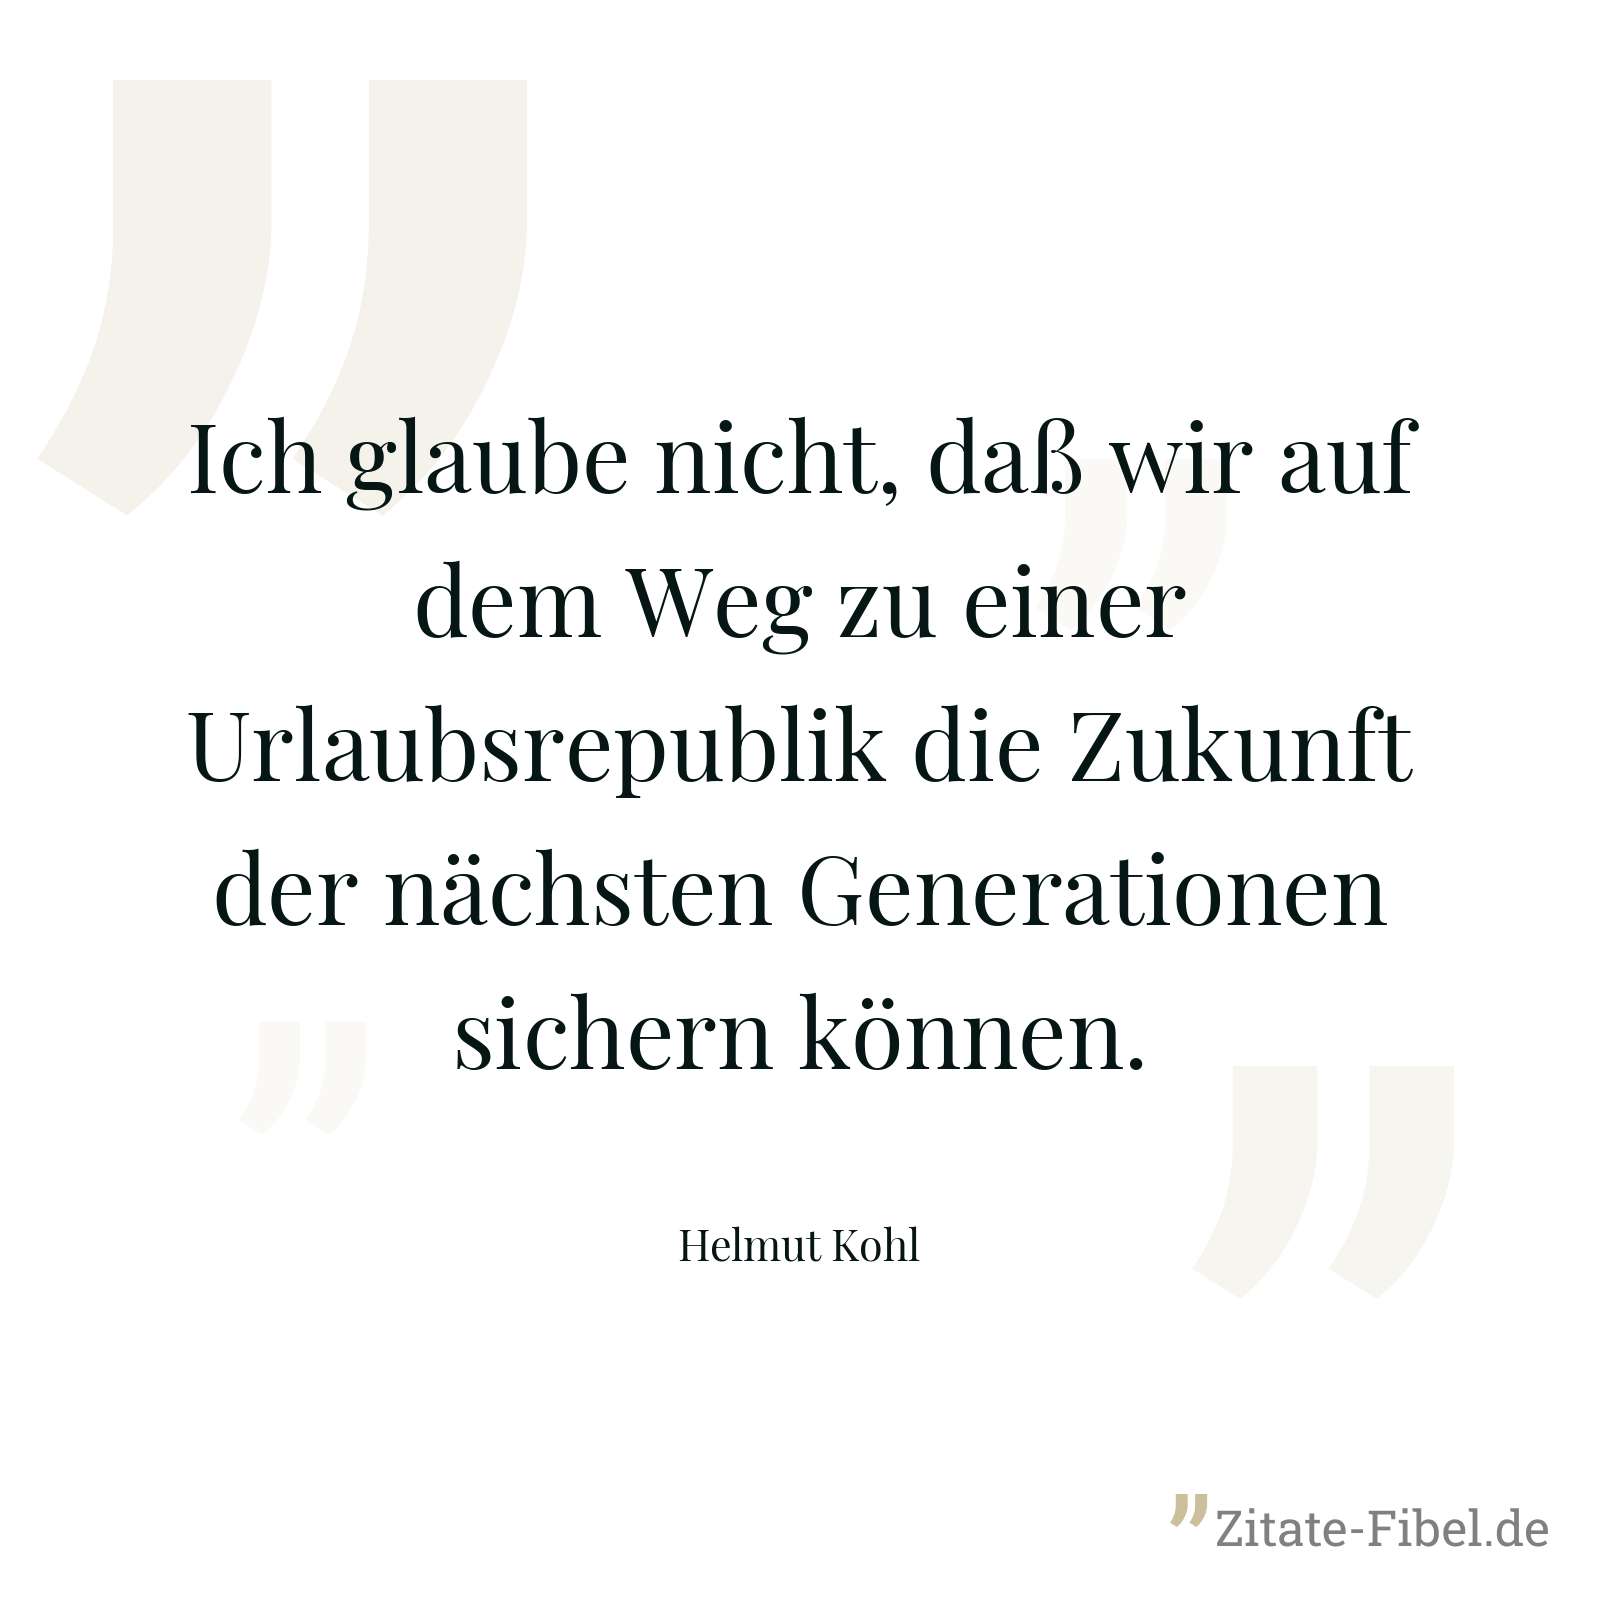 Ich glaube nicht, daß wir auf dem Weg zu einer Urlaubsrepublik die Zukunft der nächsten Generationen sichern können. - Helmut Kohl